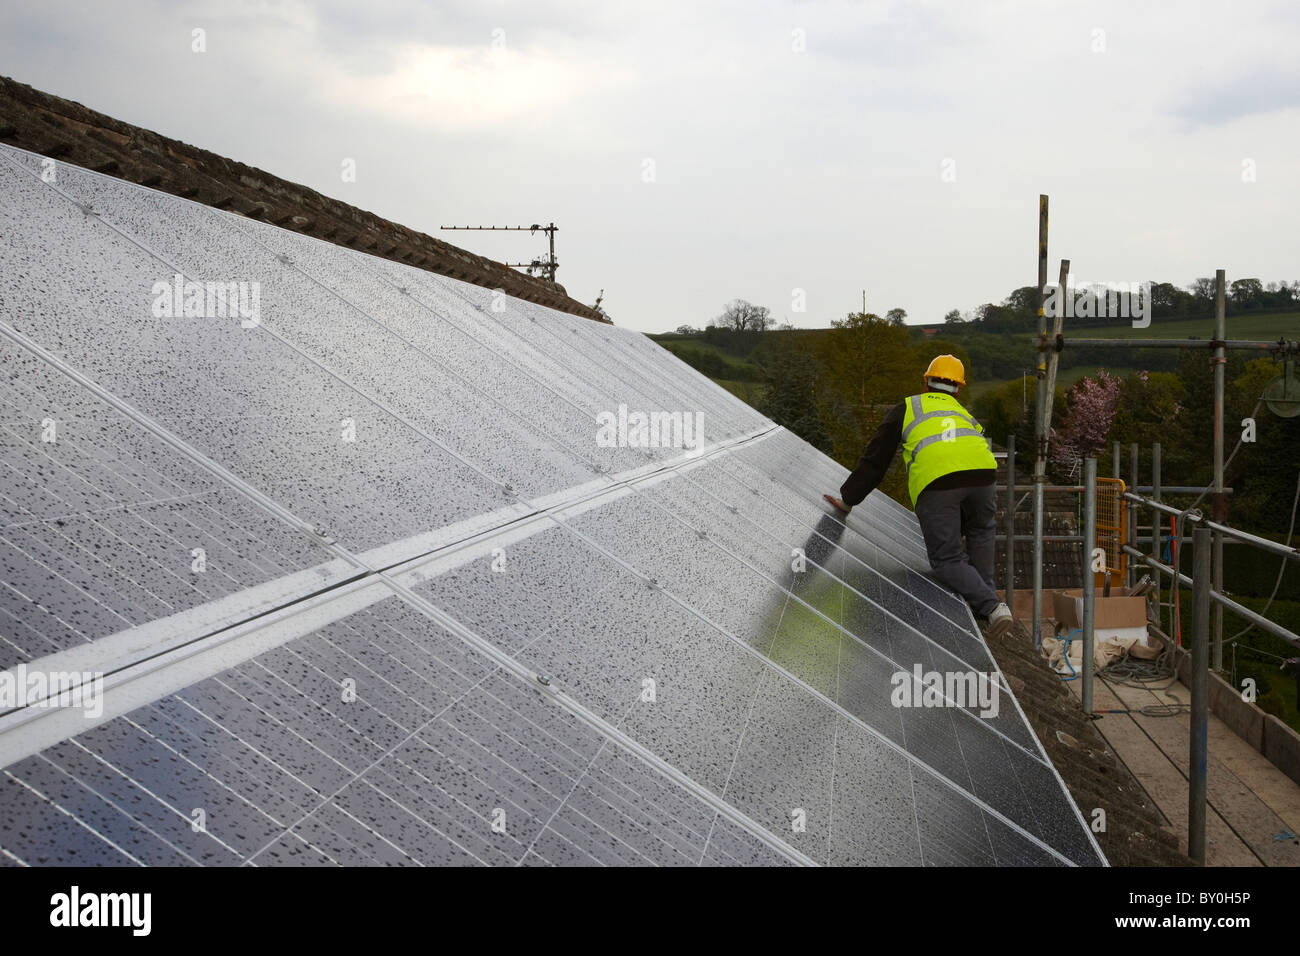 Solare fotovoltaico installazione sul tetto Foto Stock